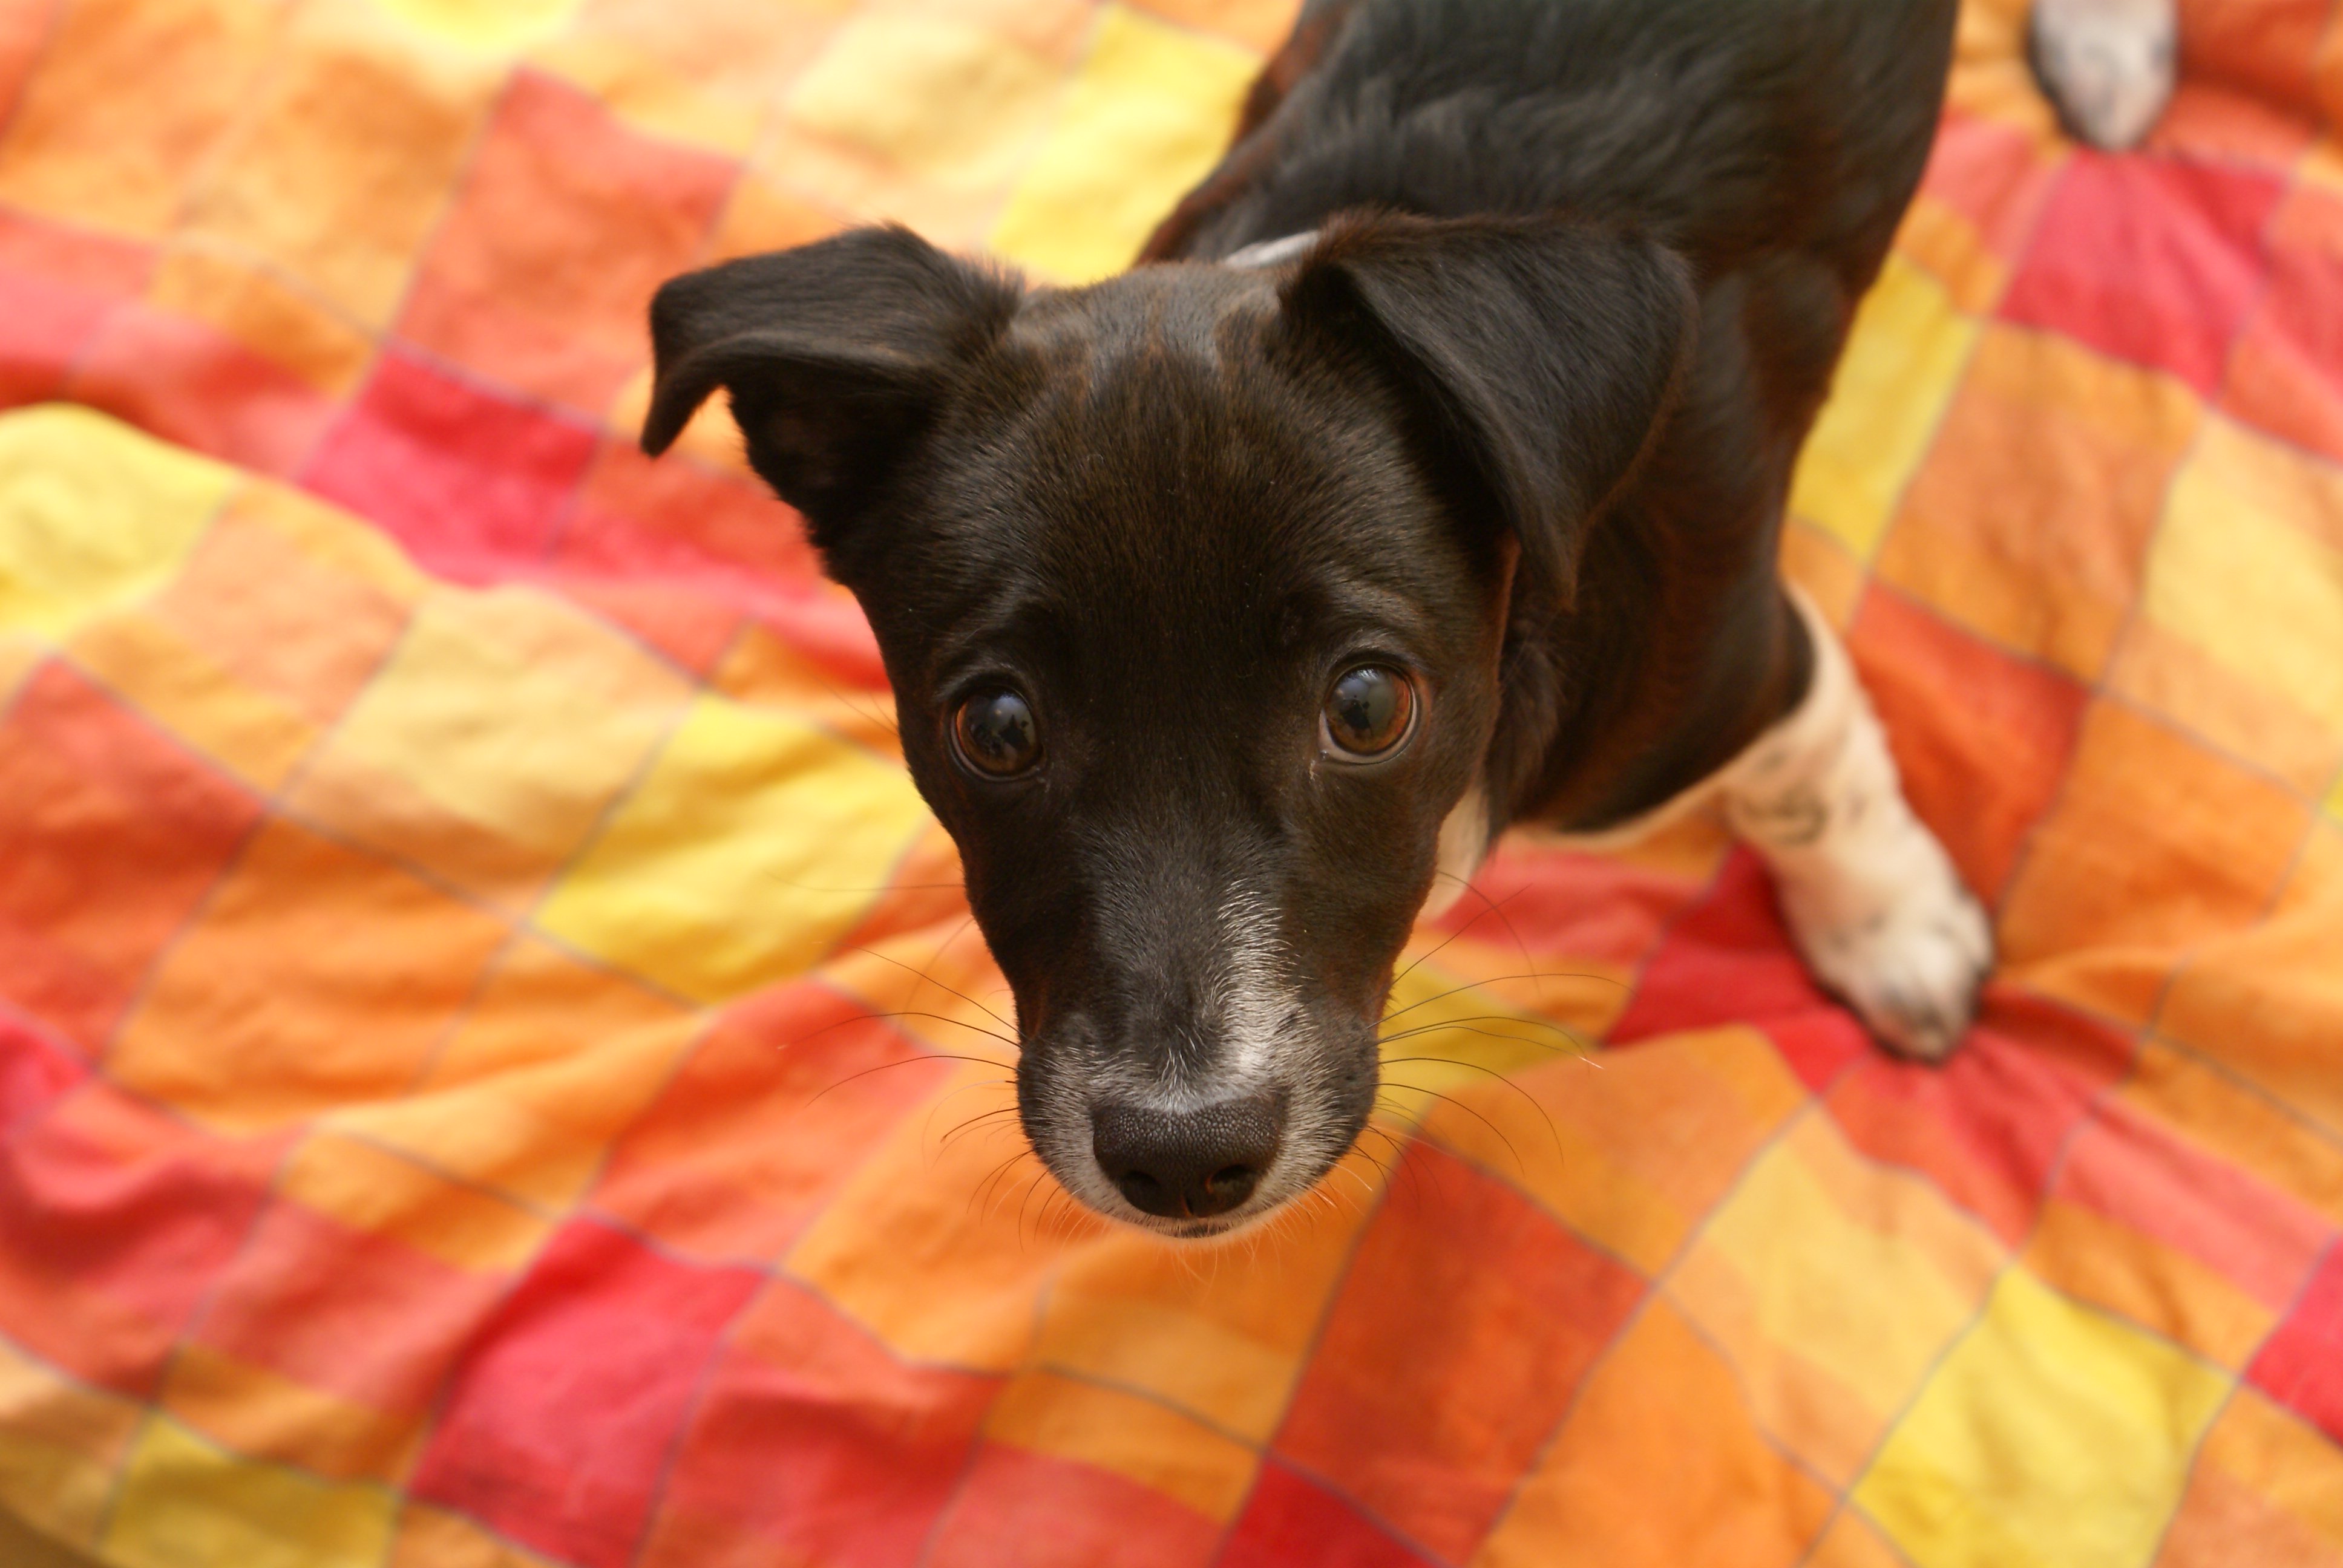 Maneras fáciles y sencillas de mantener a tu perro seguro mientras está solo en casa | Blog | PETA Latino